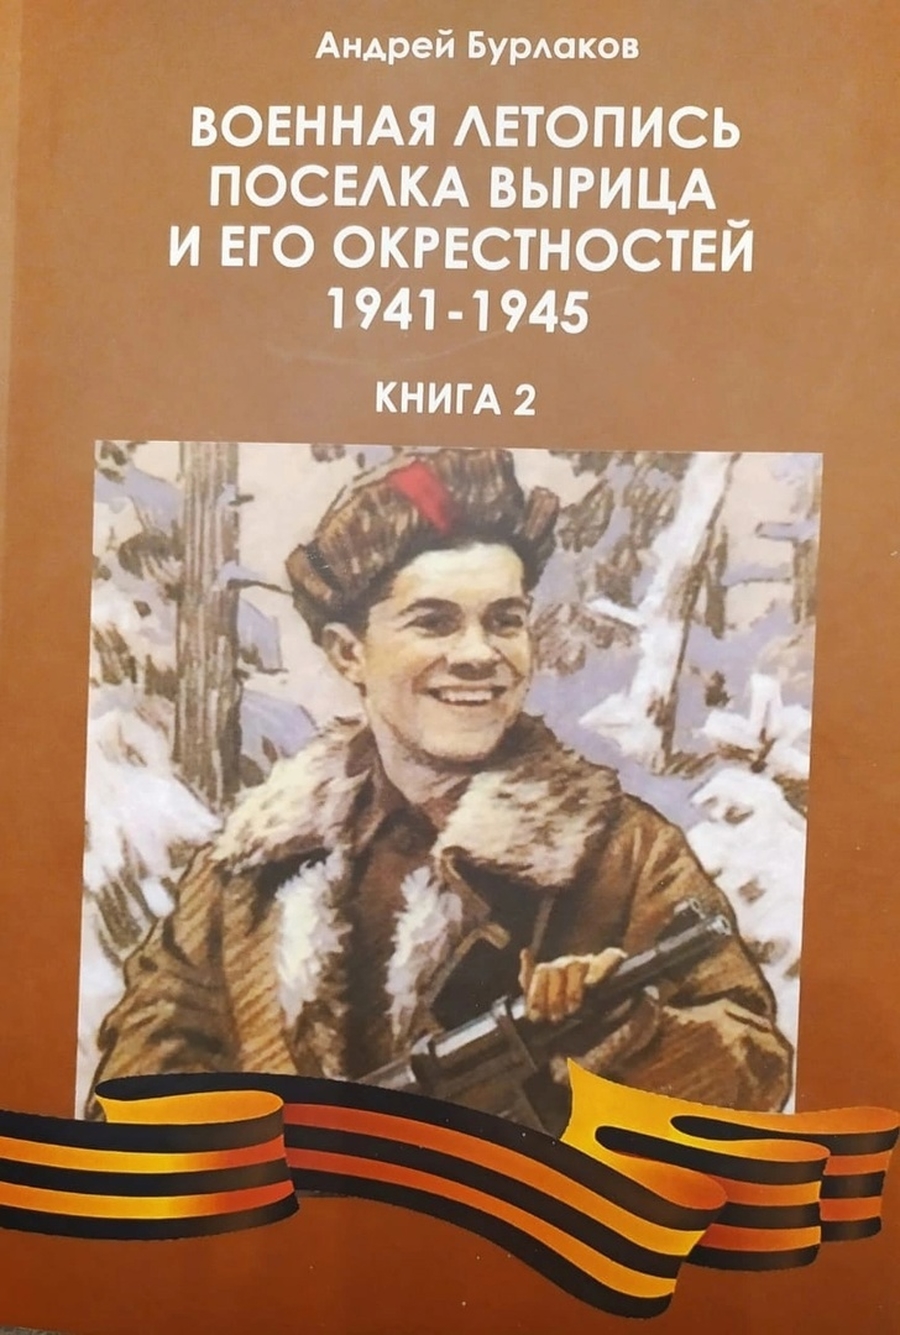 Гатчинский краевед презентовал новую книгу о военной истории Вырицы  